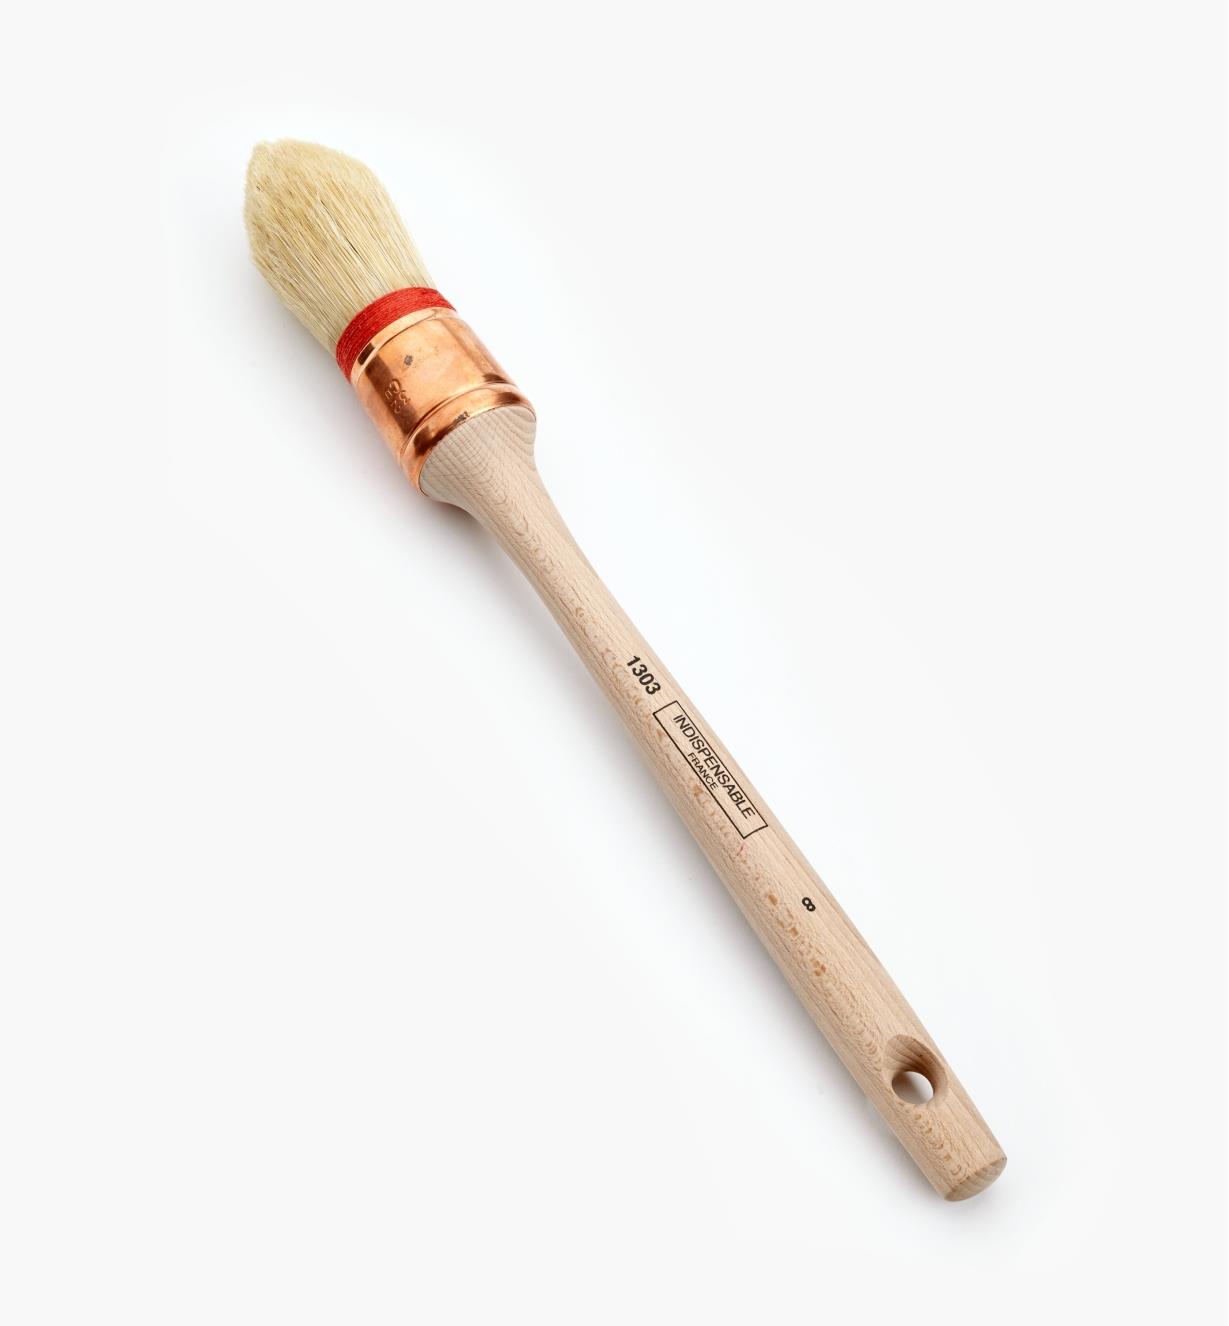 33K7032 - 1 1/4" (32mm) Round White-China-Bristle Brush